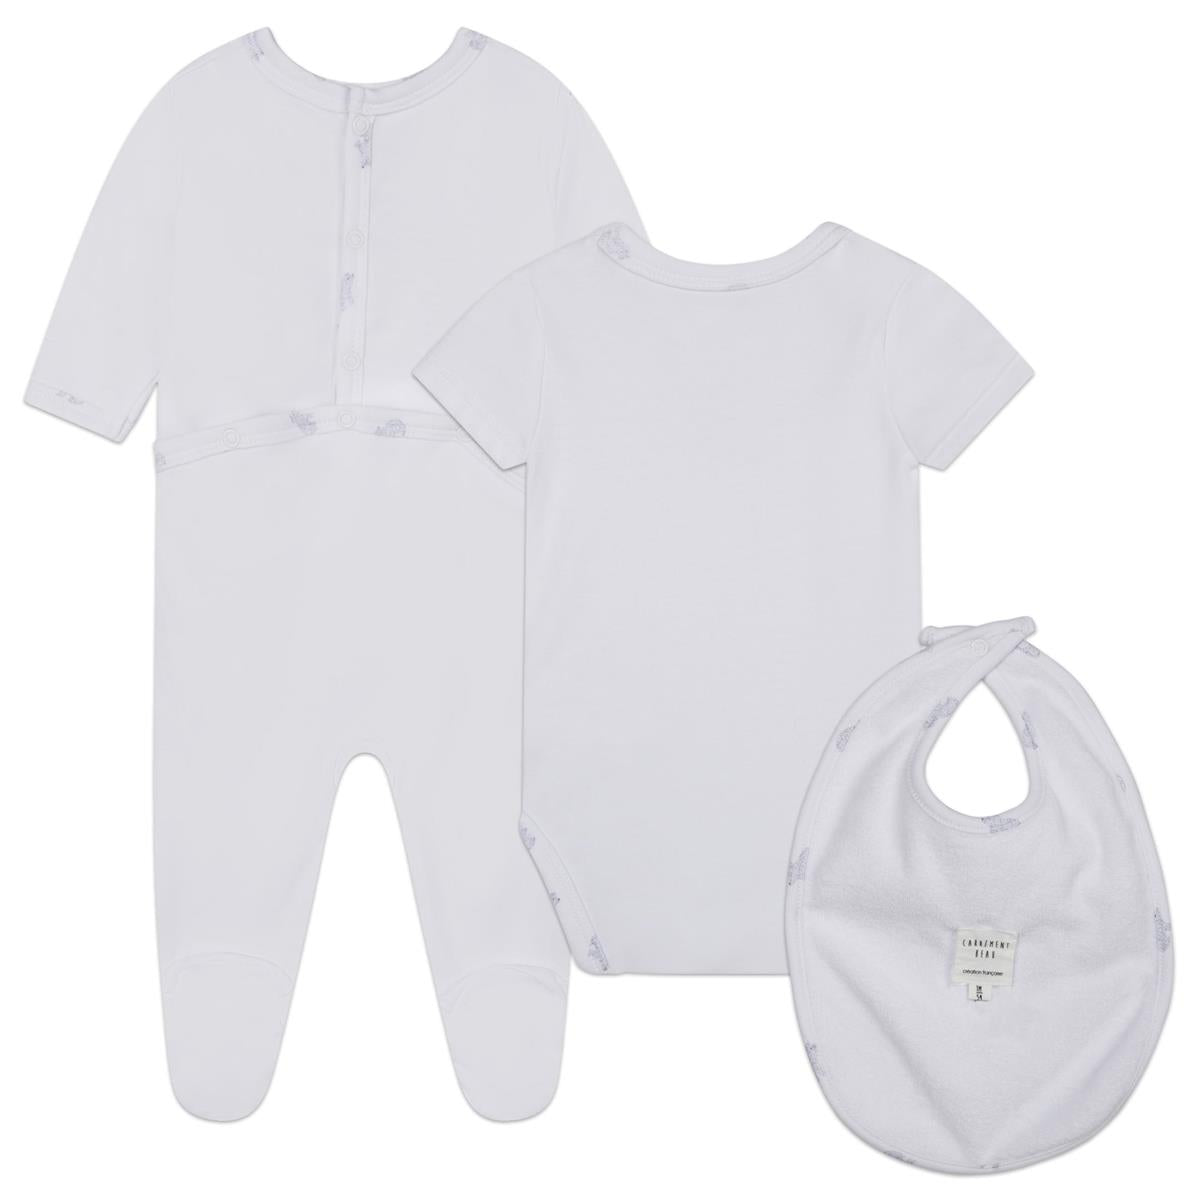 Baby Boys White Babysuit Set